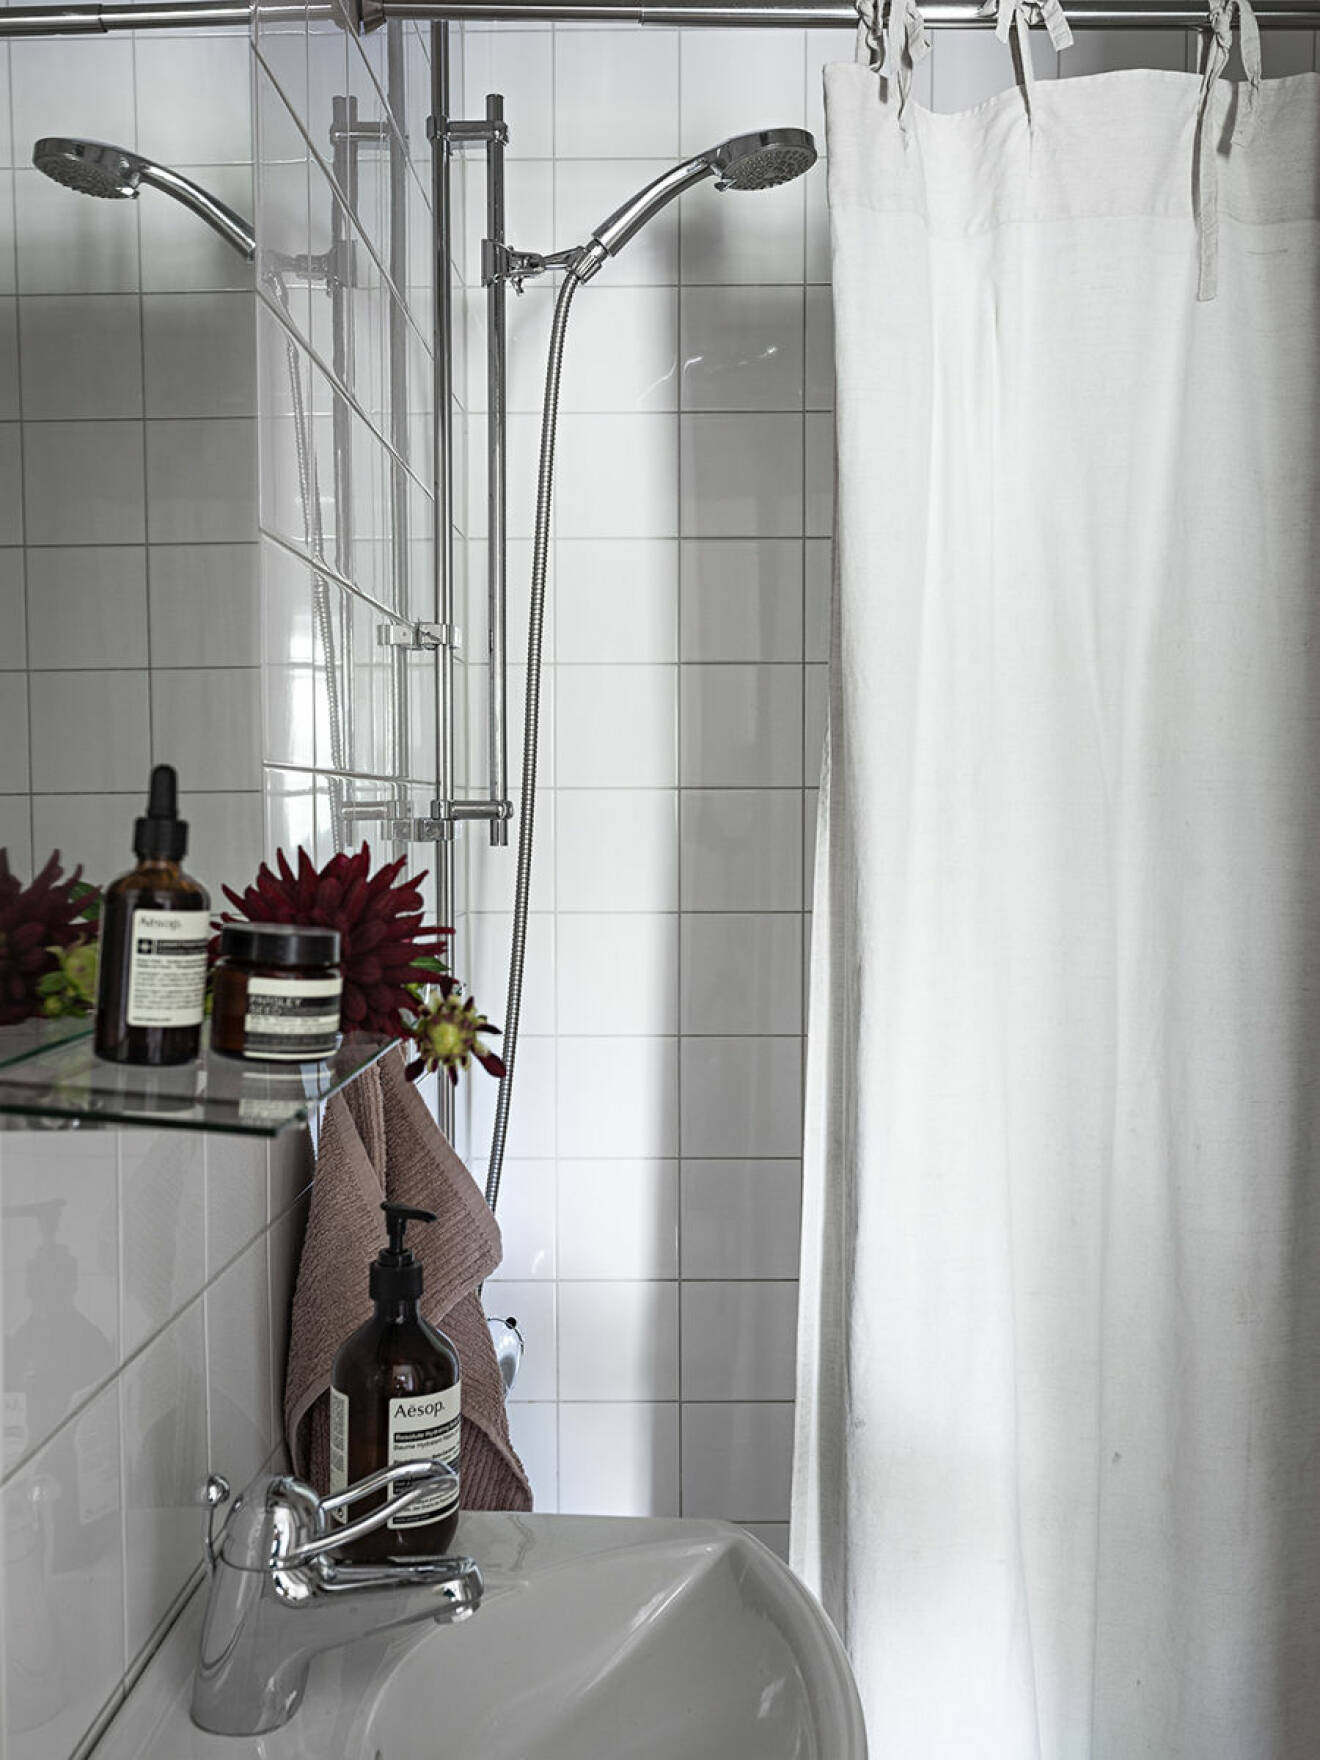 Badrum med tvålar, krämer, duschdraperi.